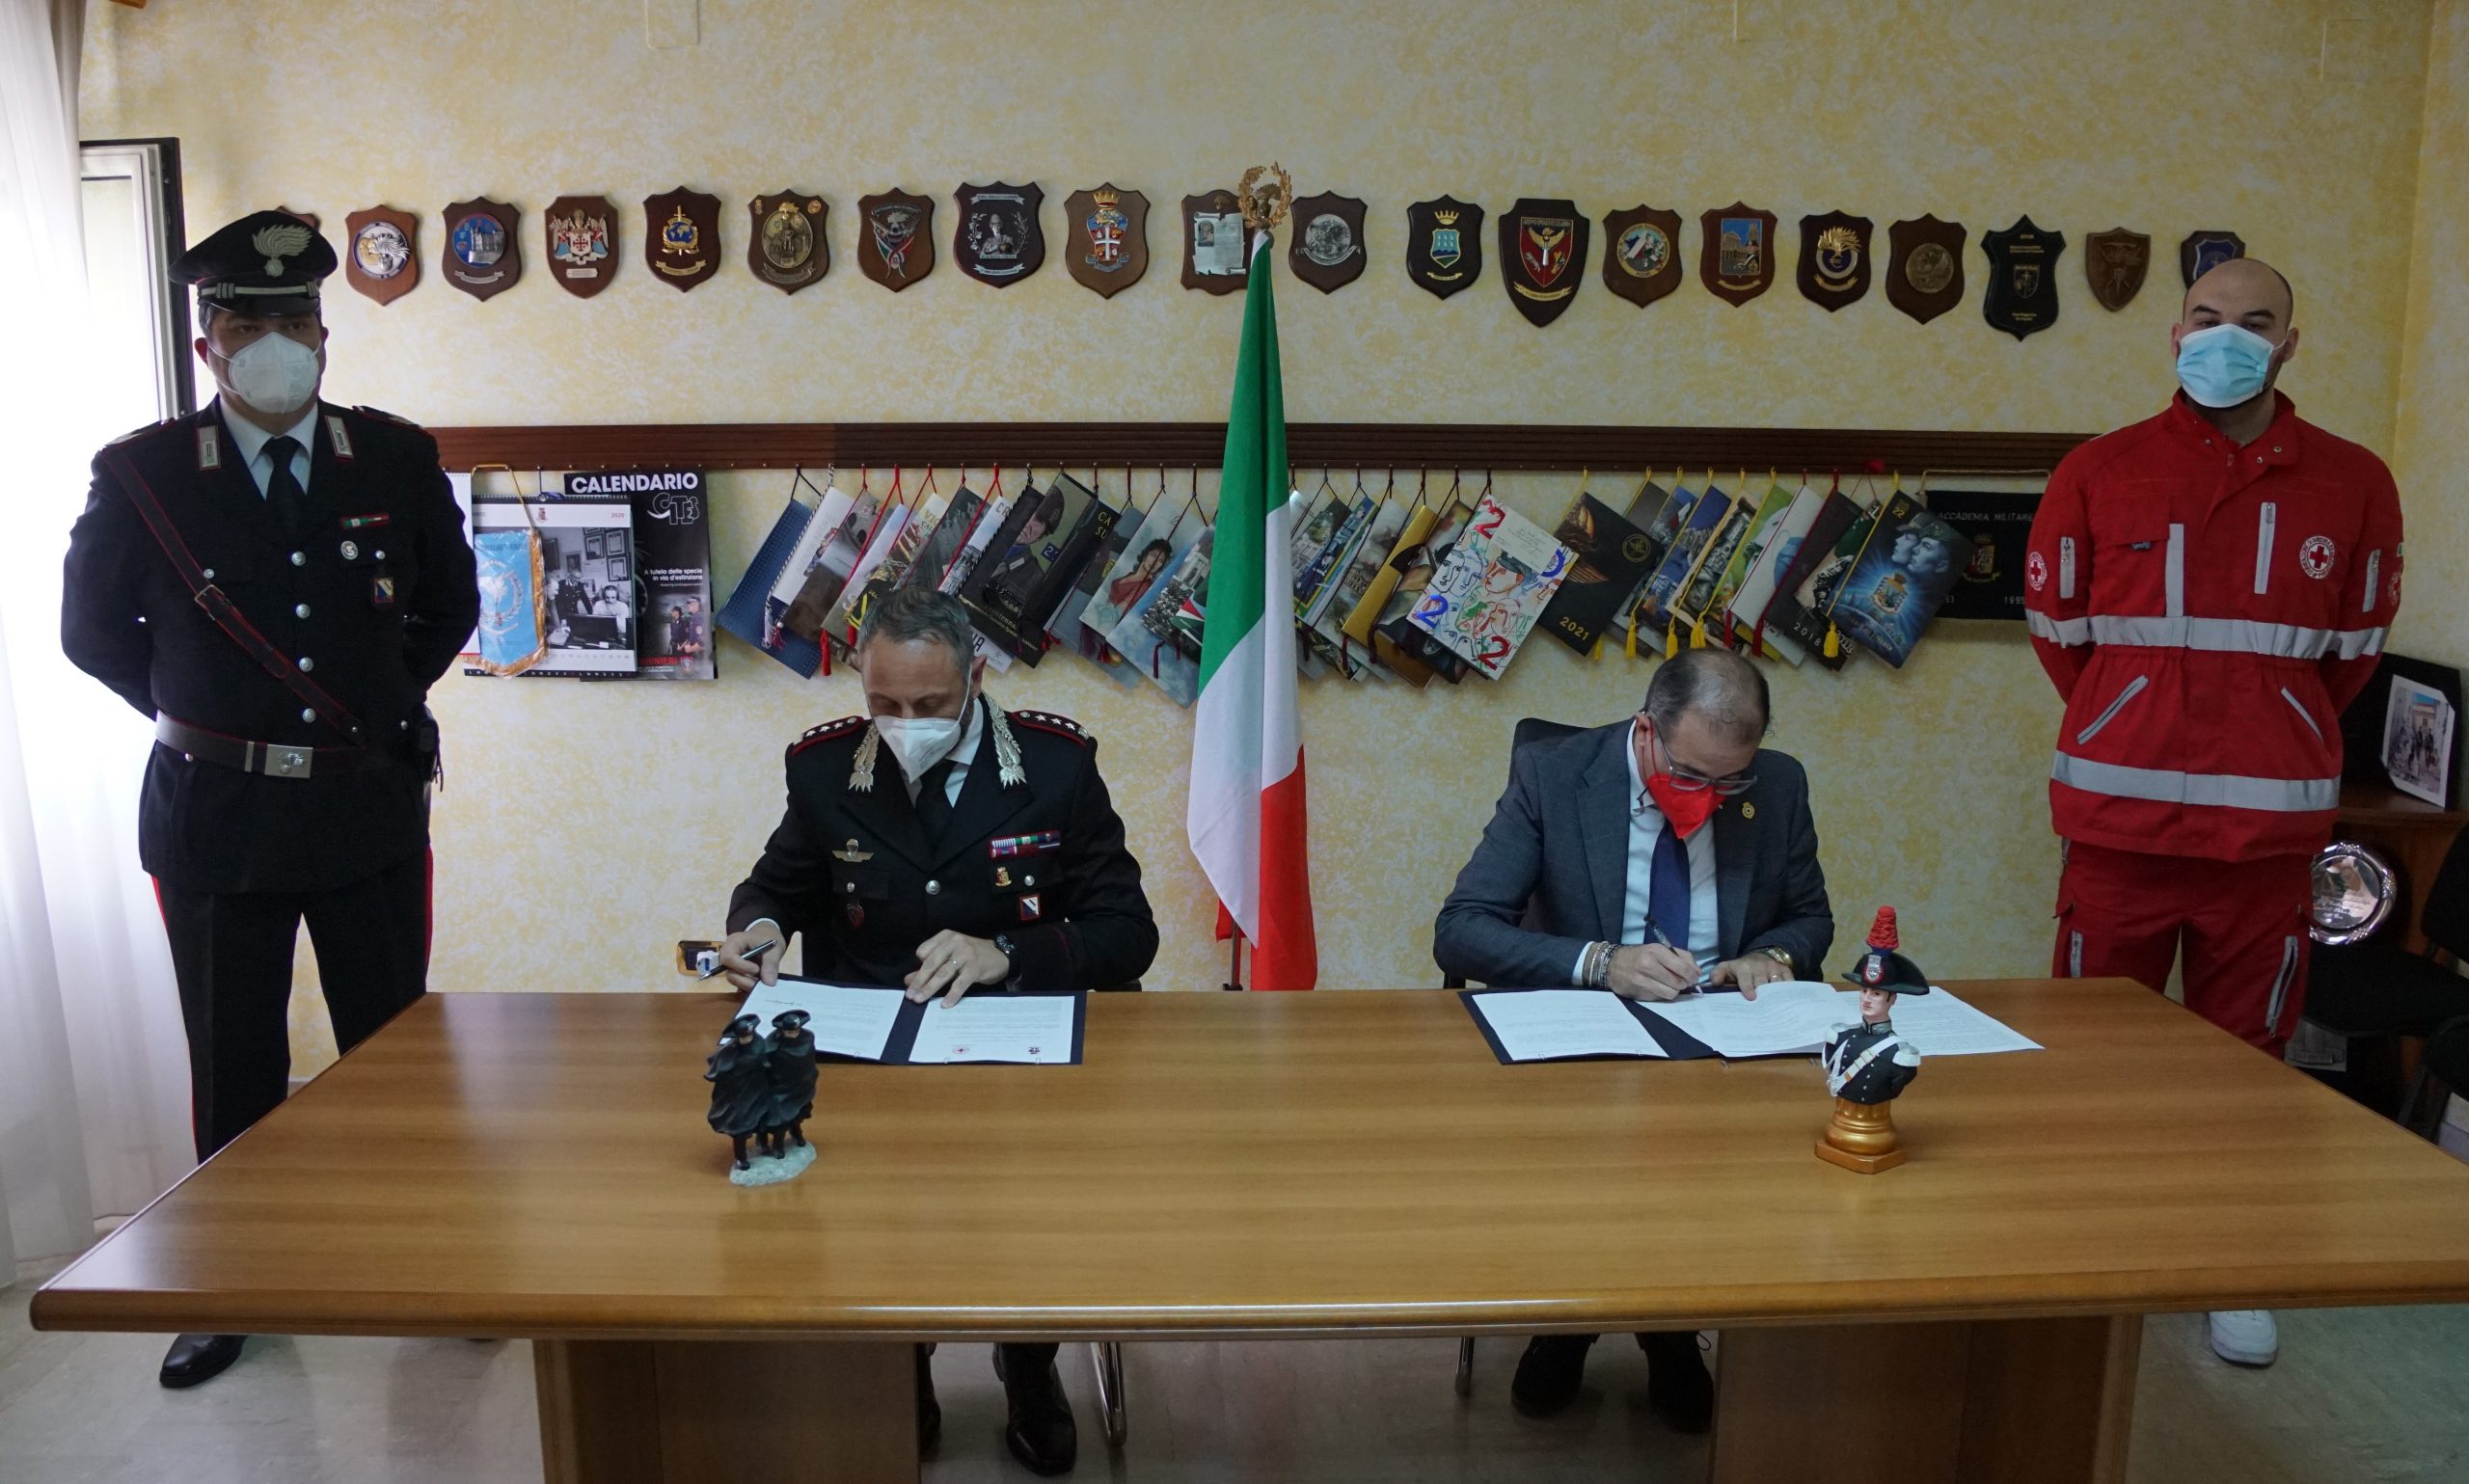 Arma dei Carabinieri e Croce Rossa di Benevento, sottoscritto protocollo d’intesa per il contrasto alla violenza di genere